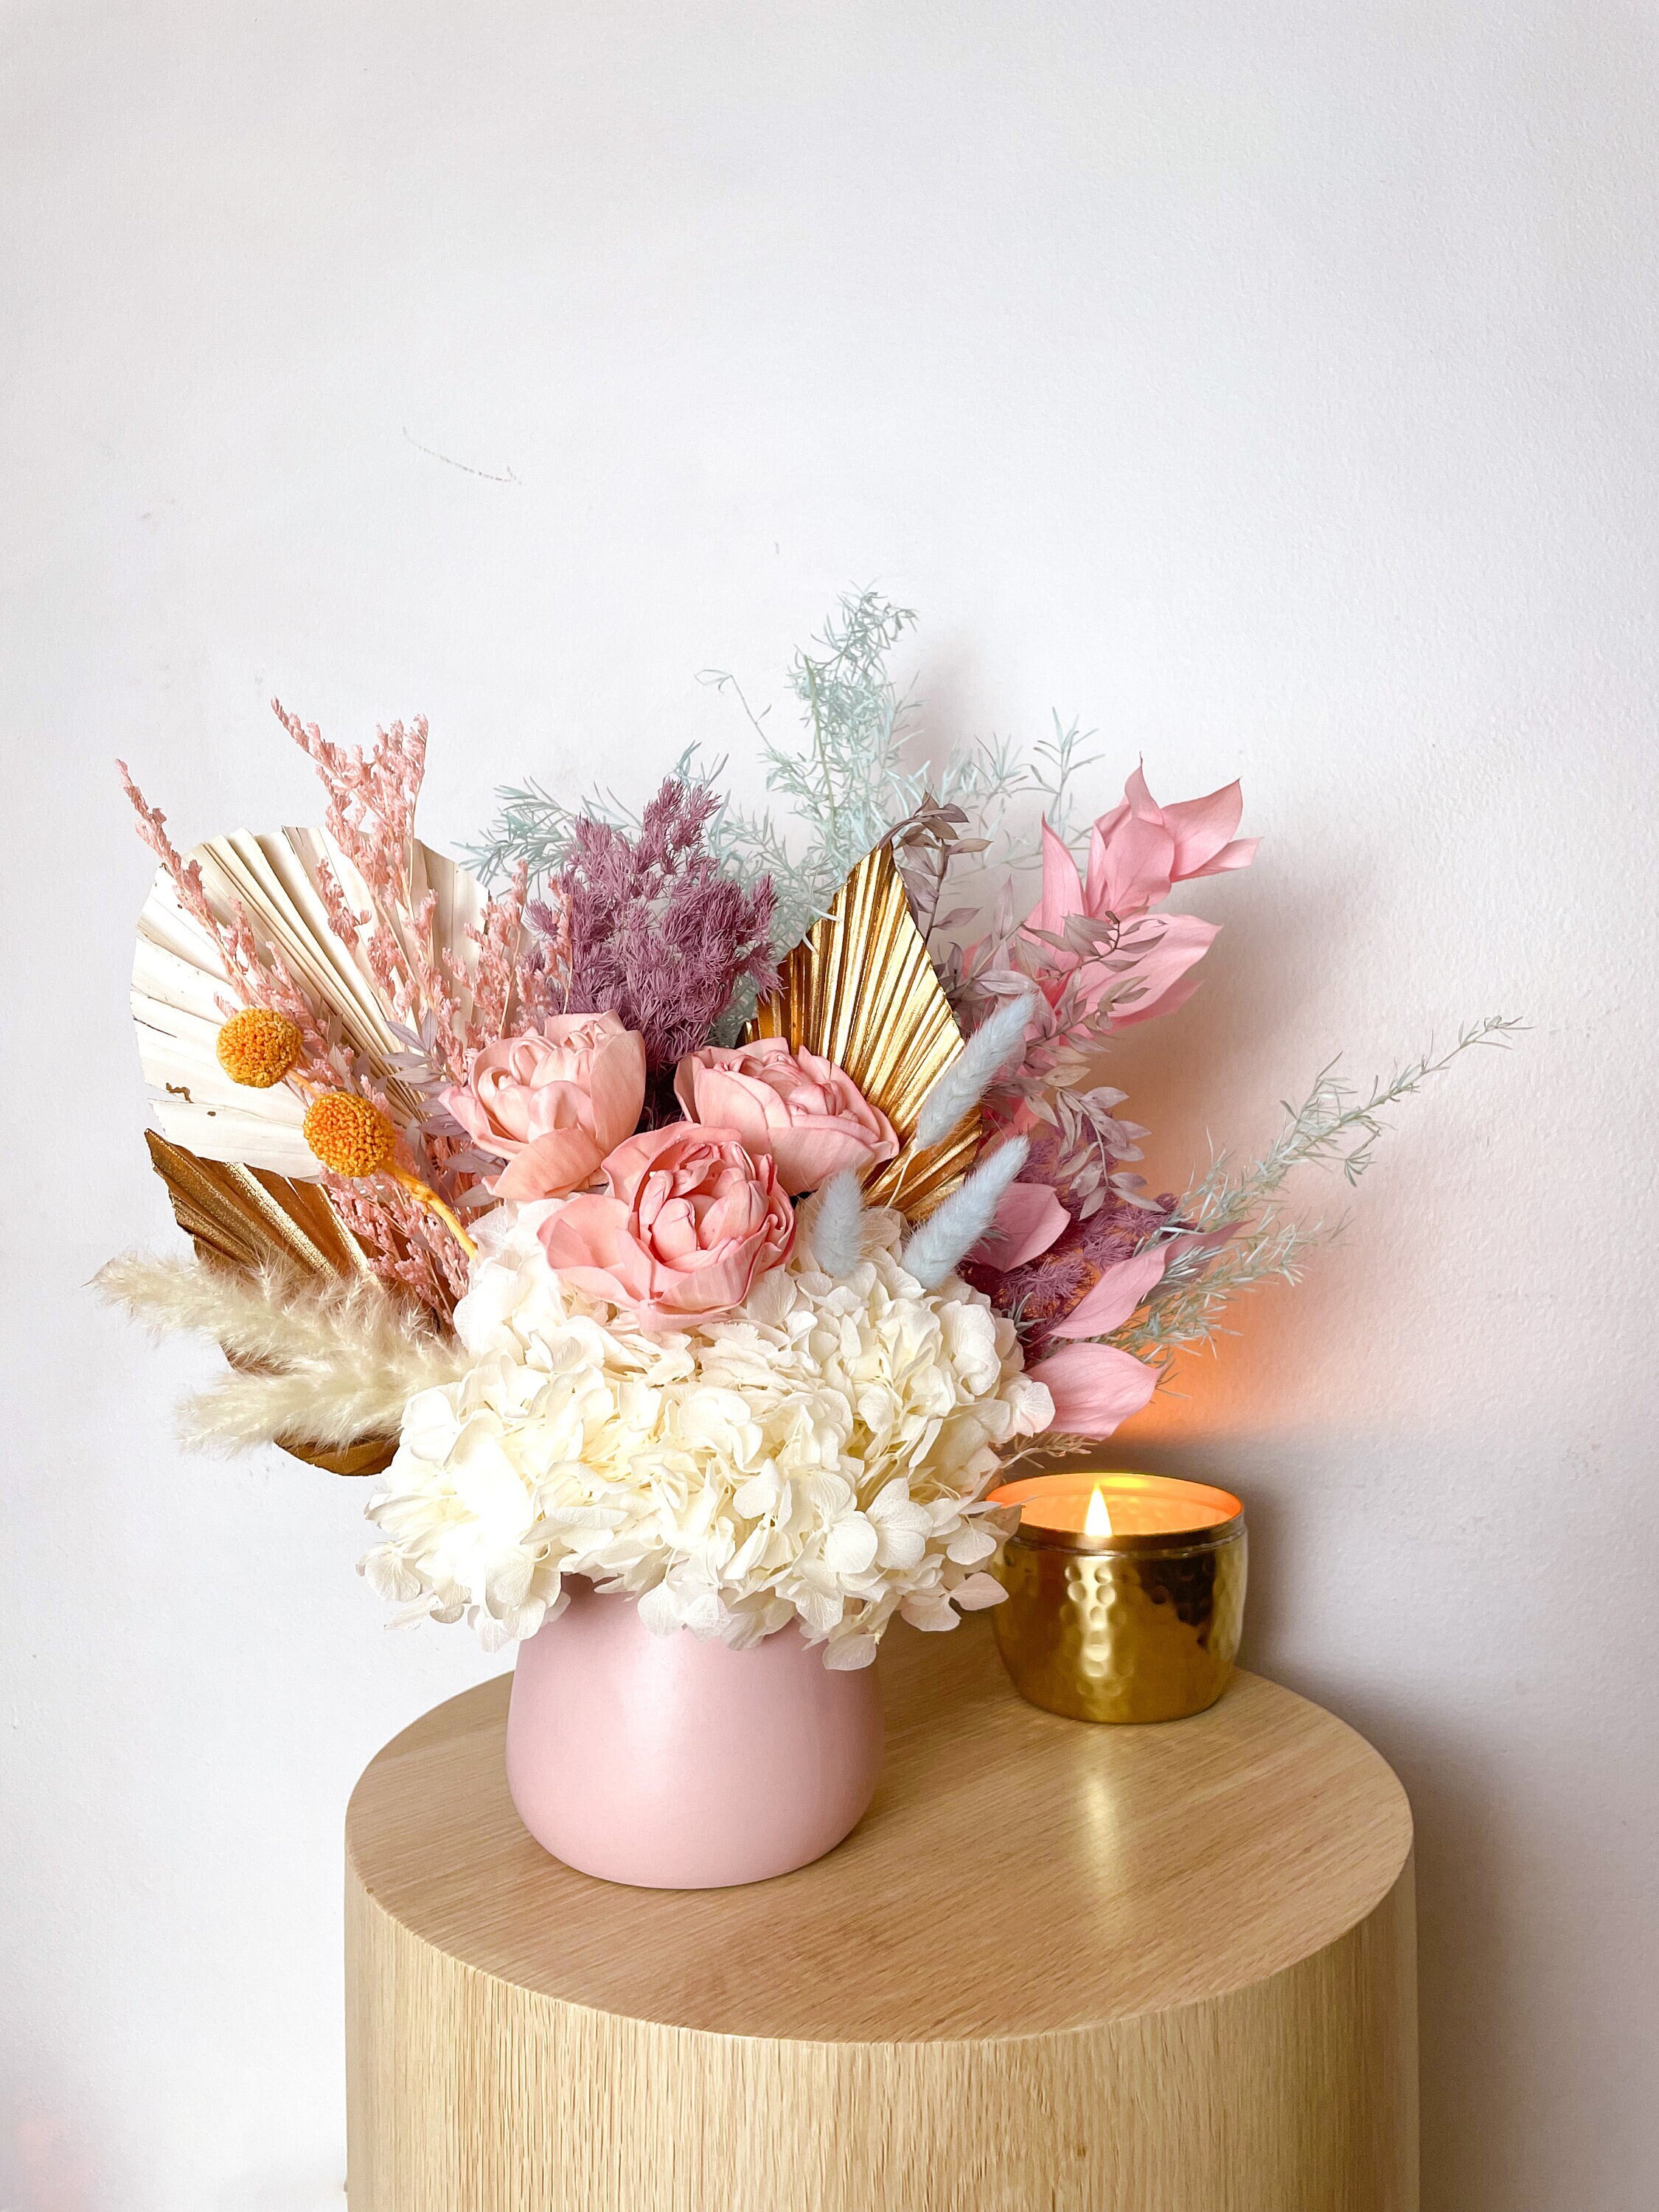 Grillage poule en métal - Matériel fleuriste - Art floral et décoration